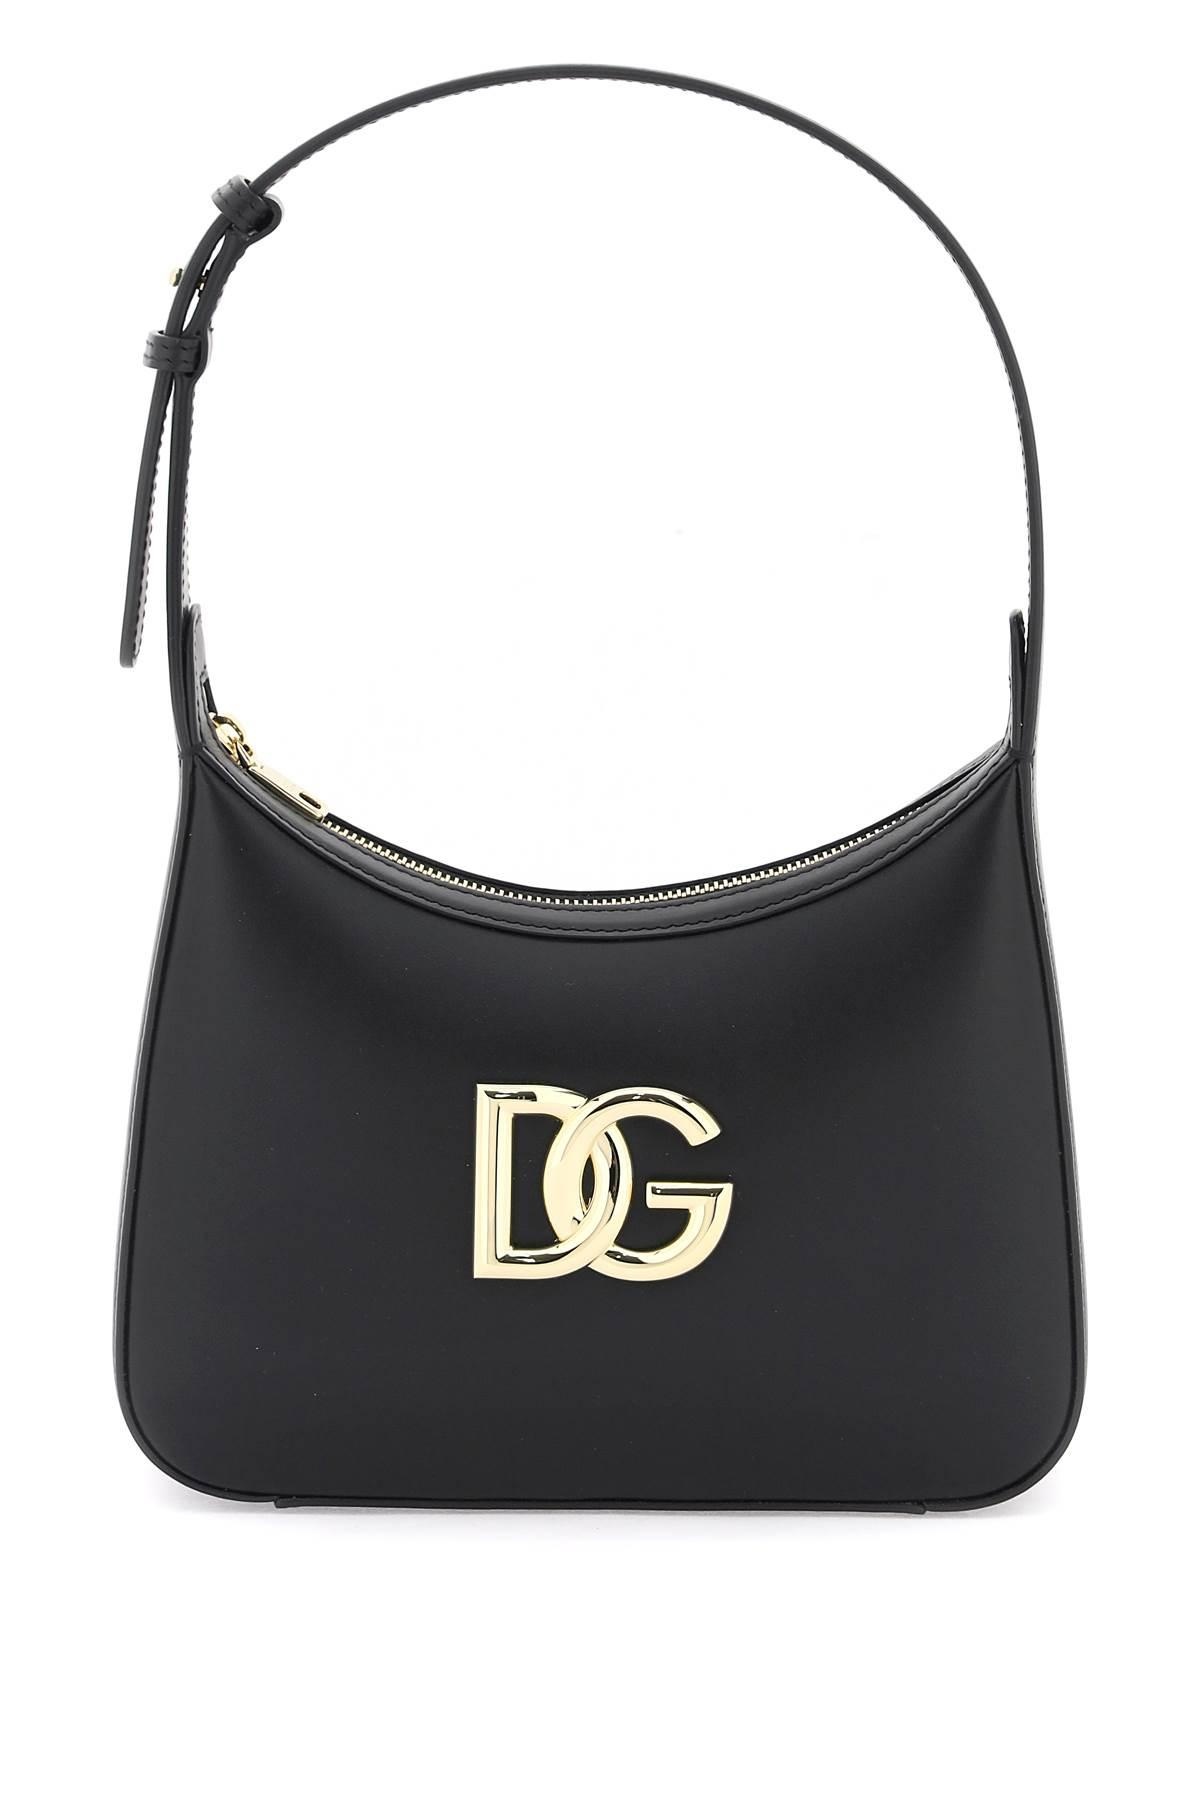 Dolce & Gabbana 3.5 Shoulder Bag - 1